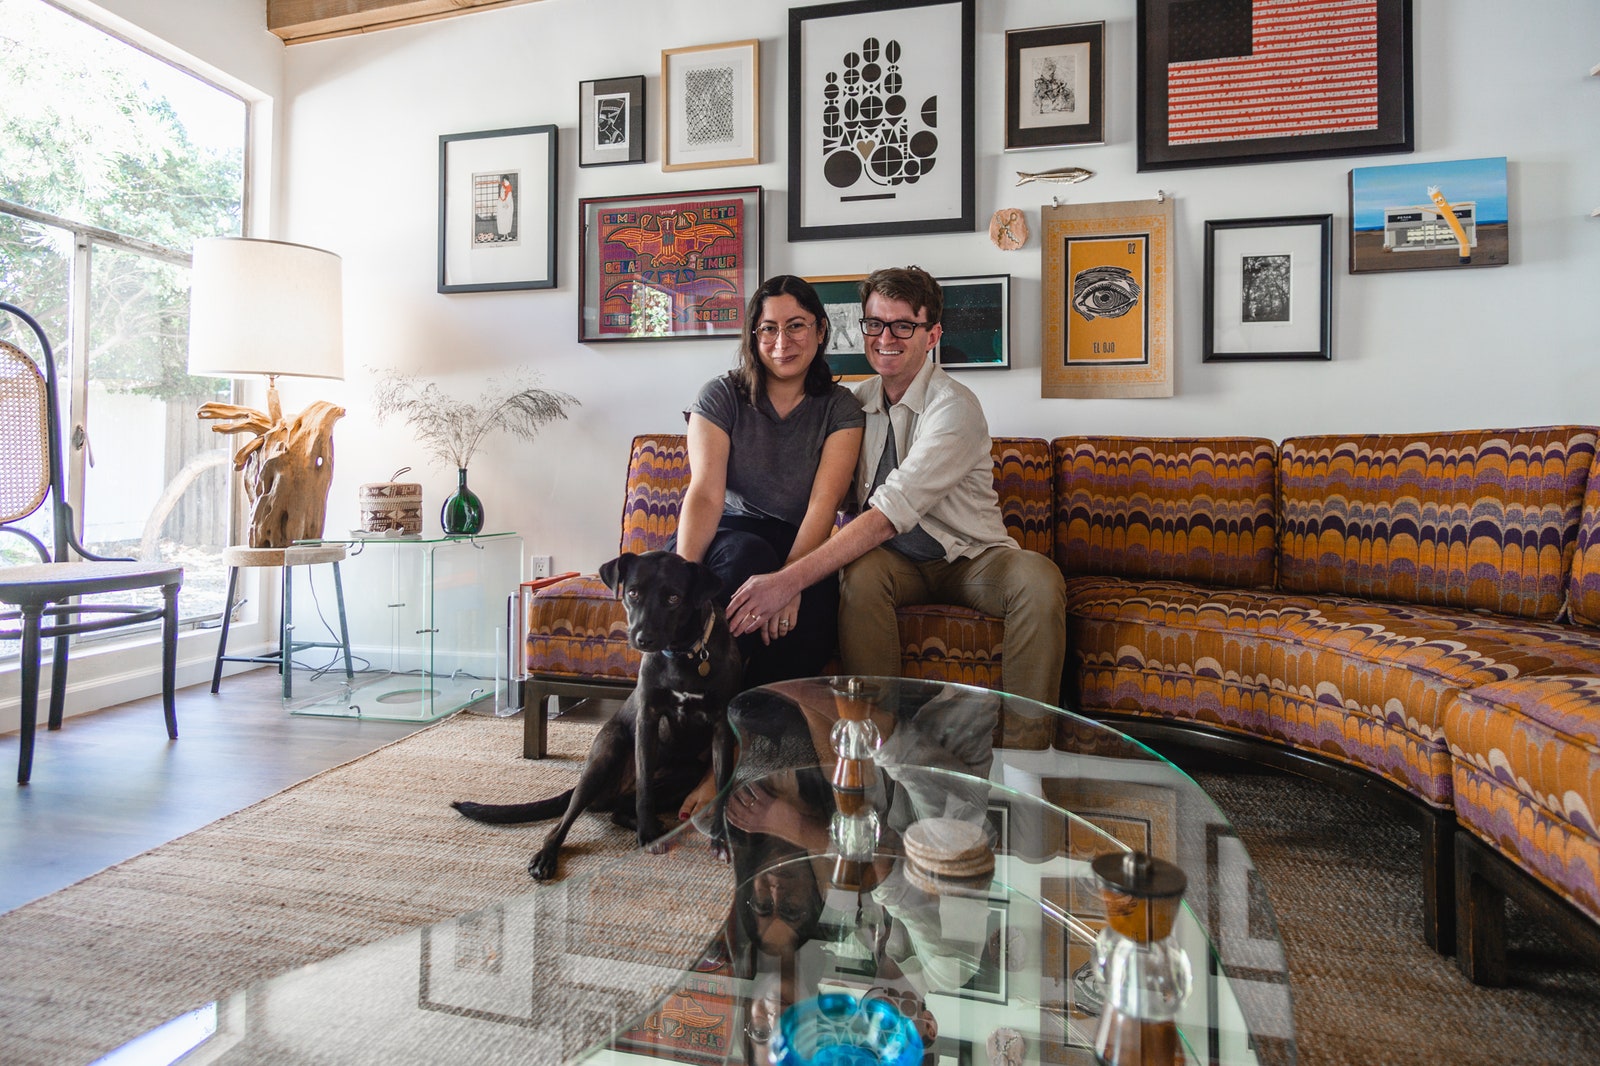 ستيفاني آدم وجروهما ديزي يبتسمان على الأريكة.  صور مايك بيترز